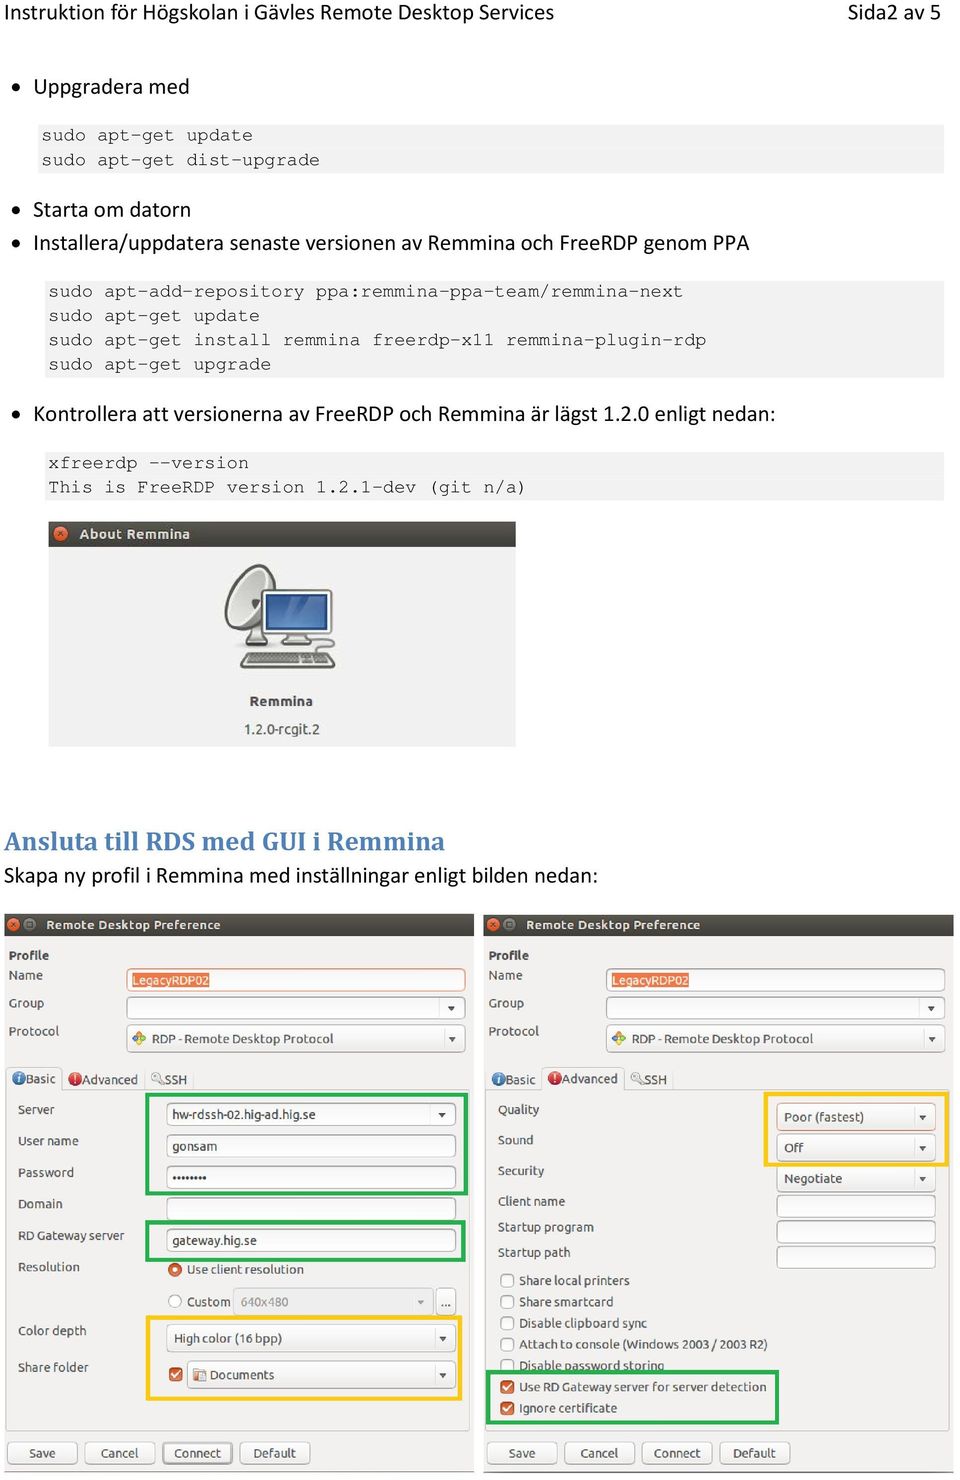 apt-get install remmina freerdp-x11 remmina-plugin-rdp sudo apt-get upgrade Kontrollera att versionerna av FreeRDP och Remmina är lägst 1.2.